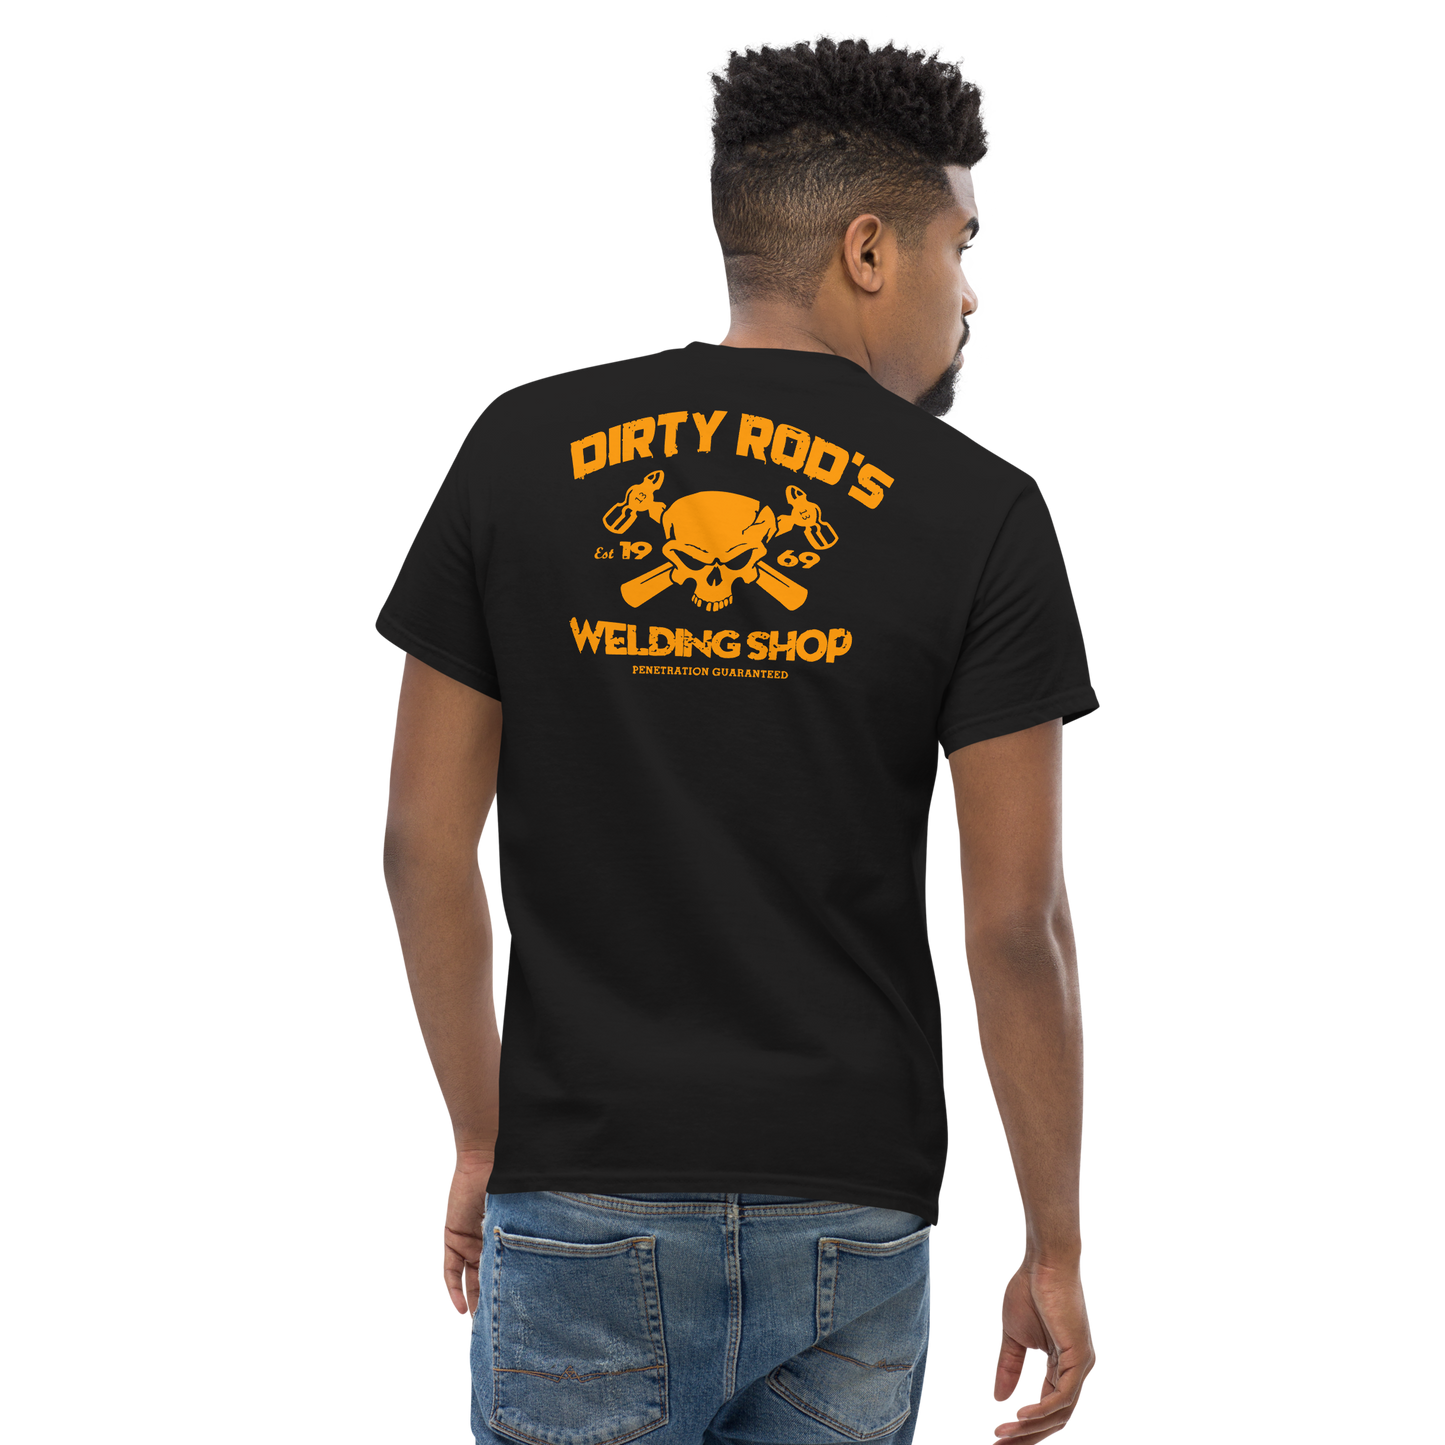 Dirty Rod's Welding Shop 100% Cotton T-Shirt